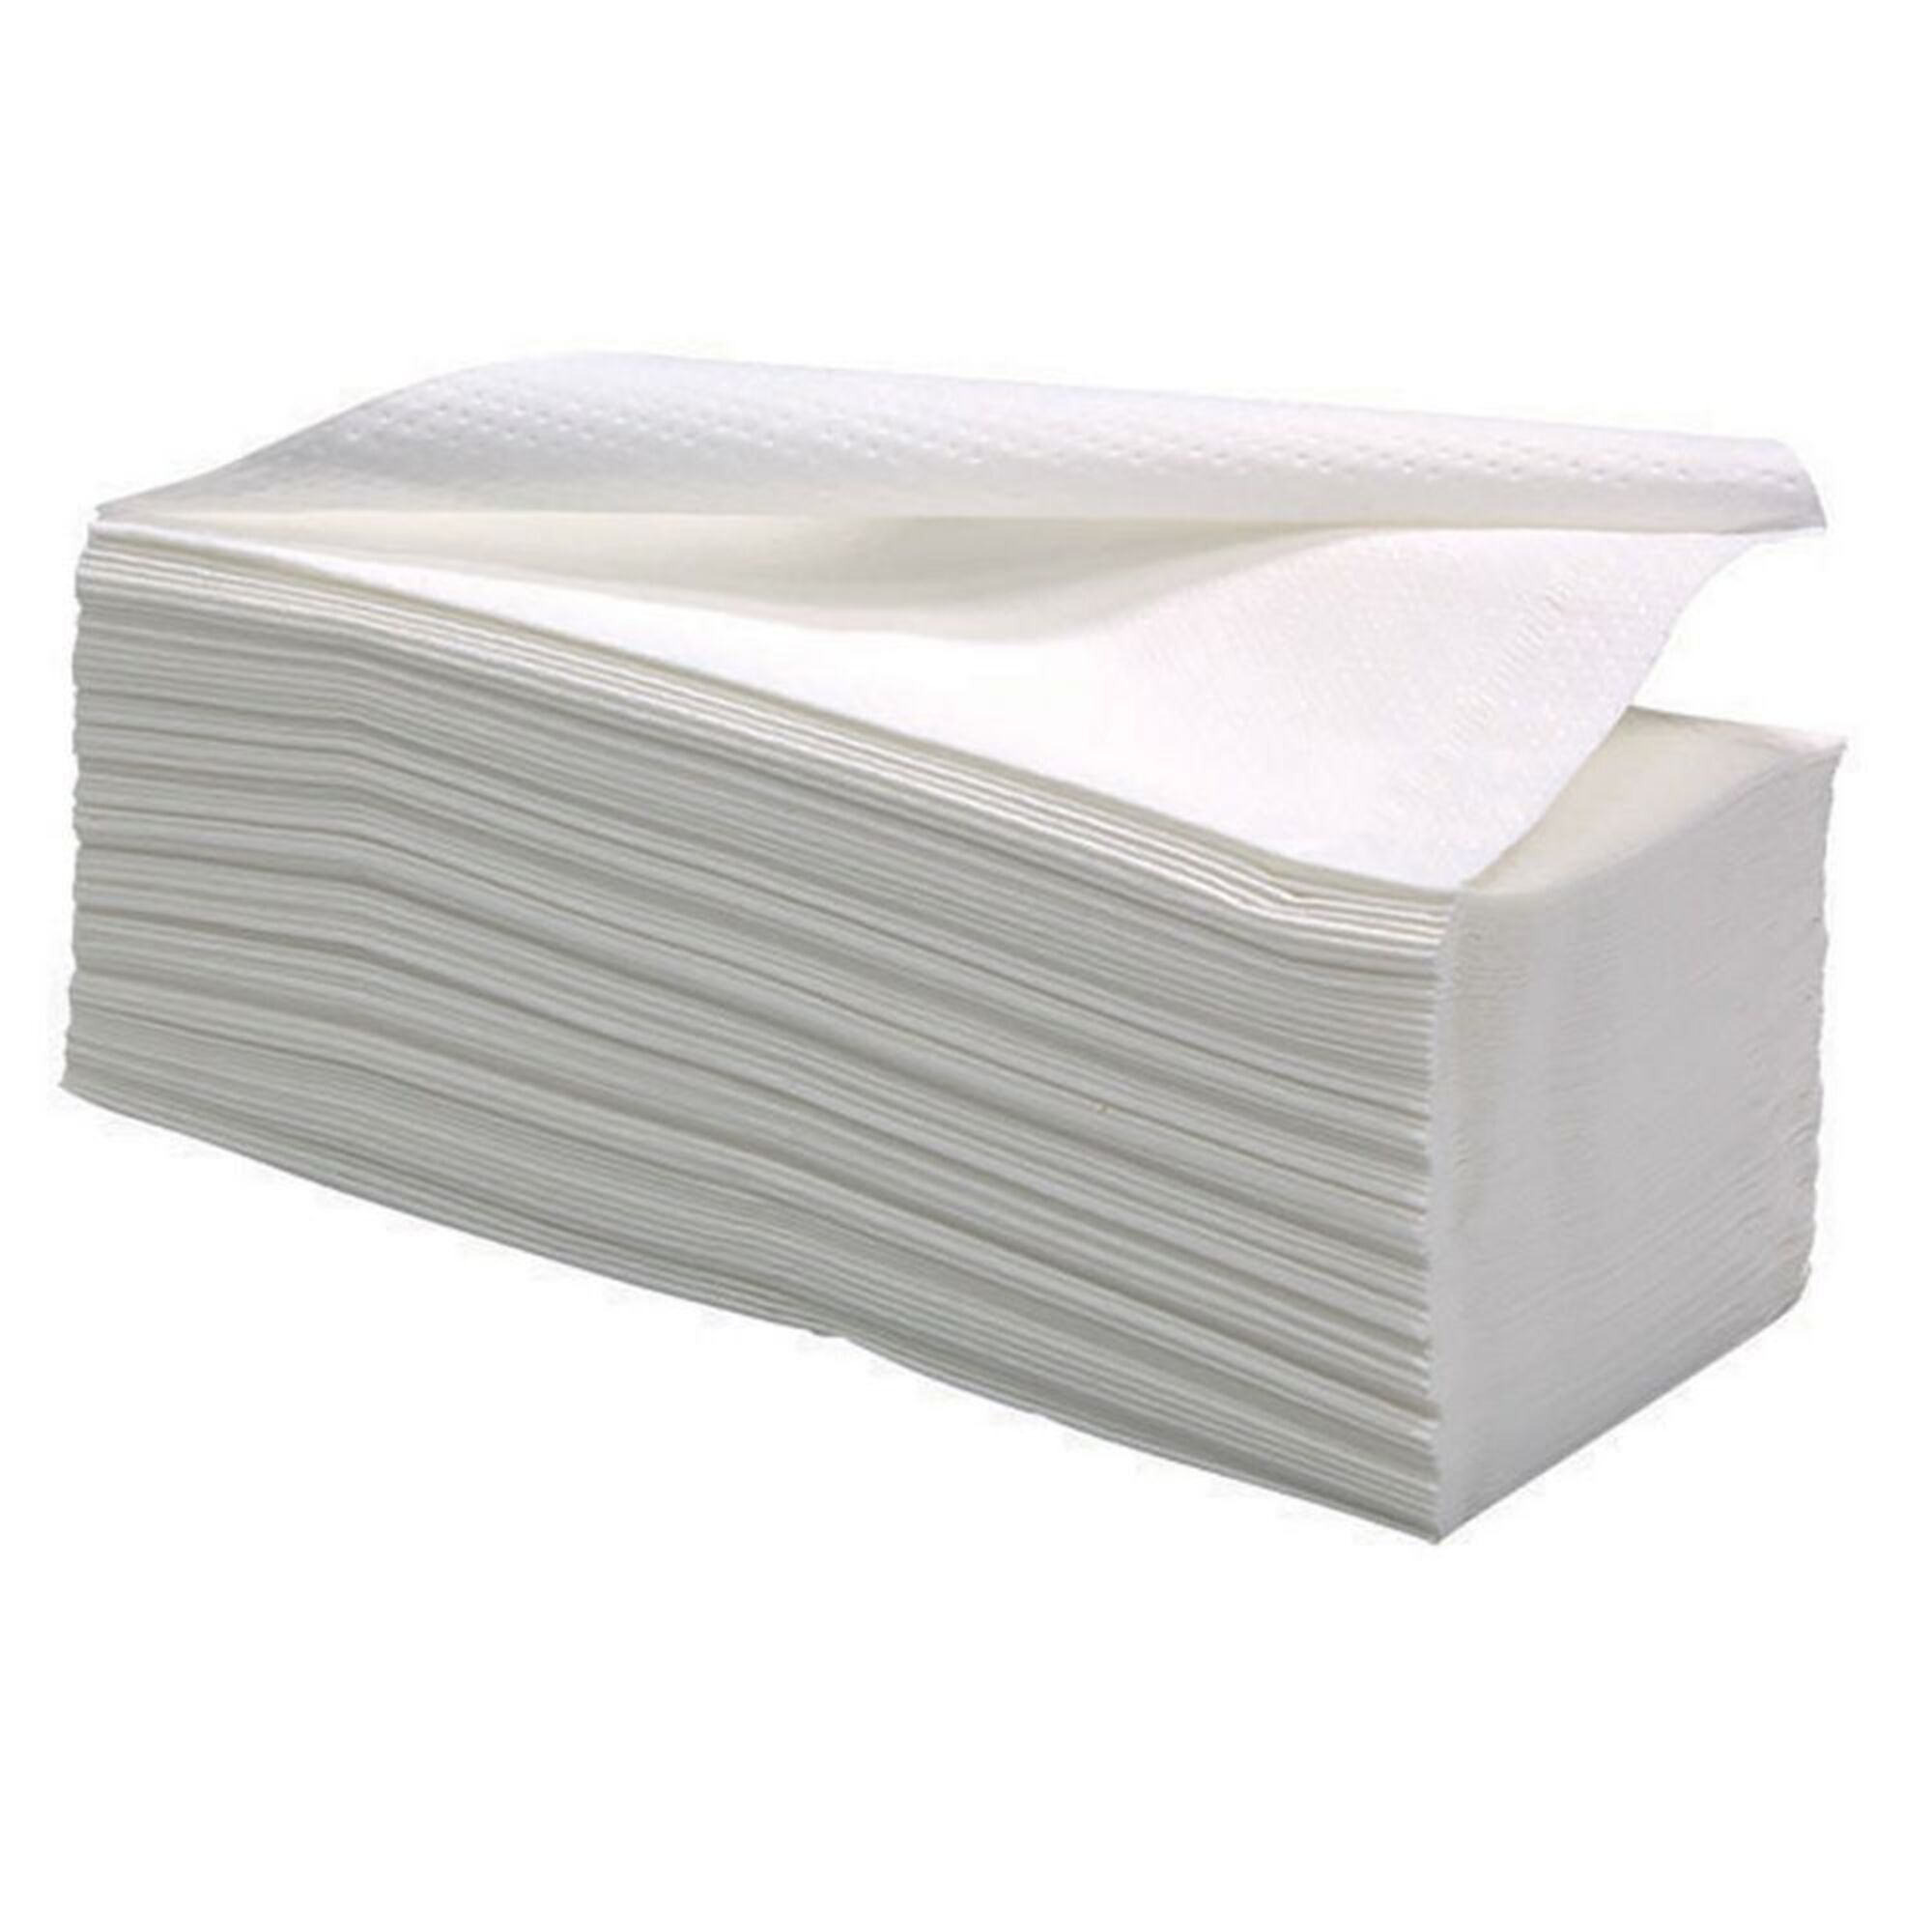 Toalhete de Papel Dobrado, 2 Camadas, 142 Folhas, Meia dobra, 200 mm, Branco, Embalagem de 20 Packs